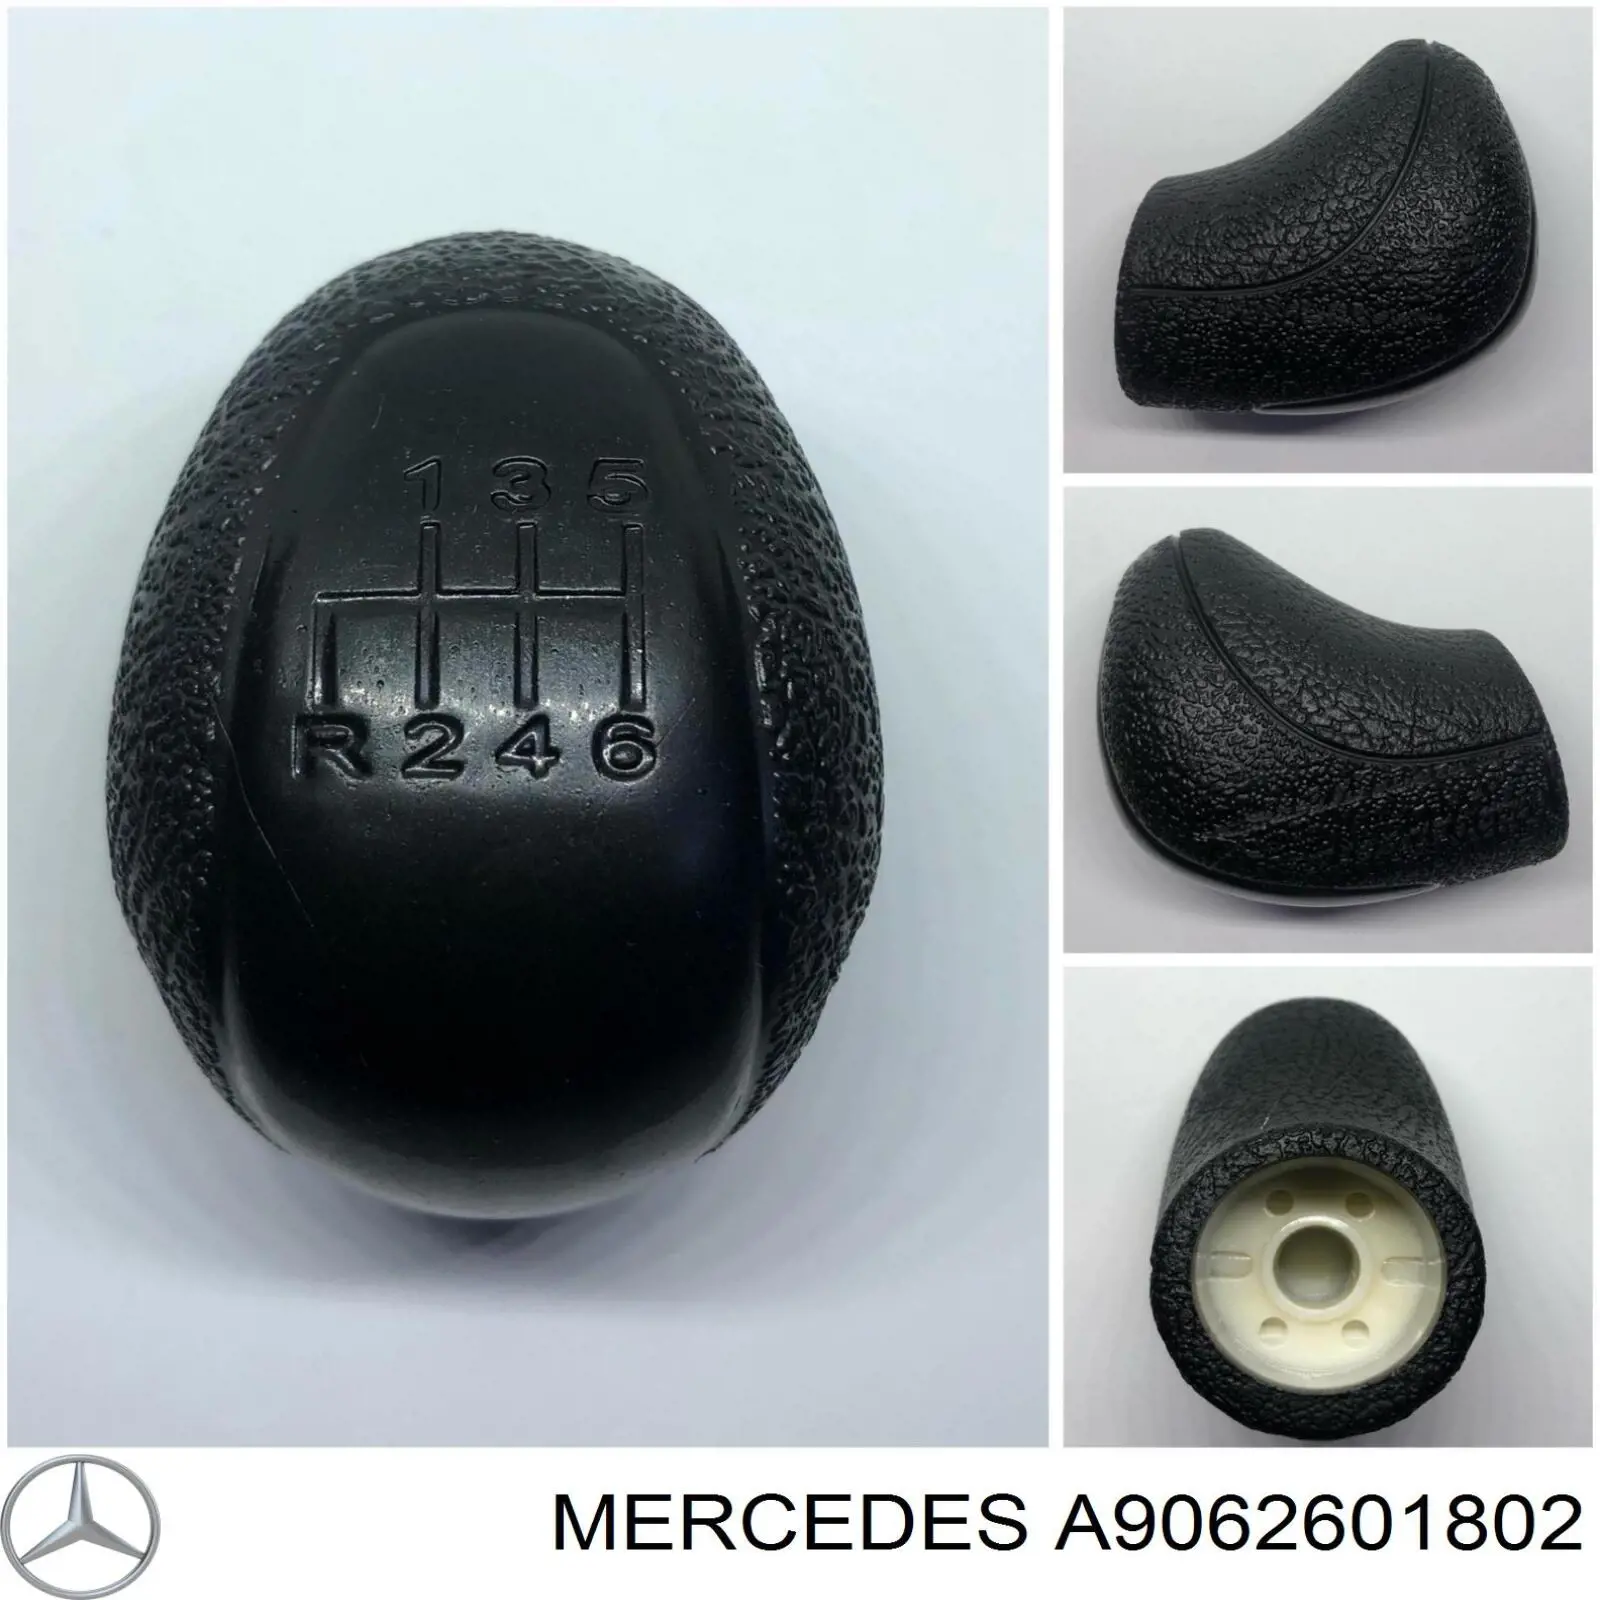 A9062601802 Mercedes avalanca de mudança